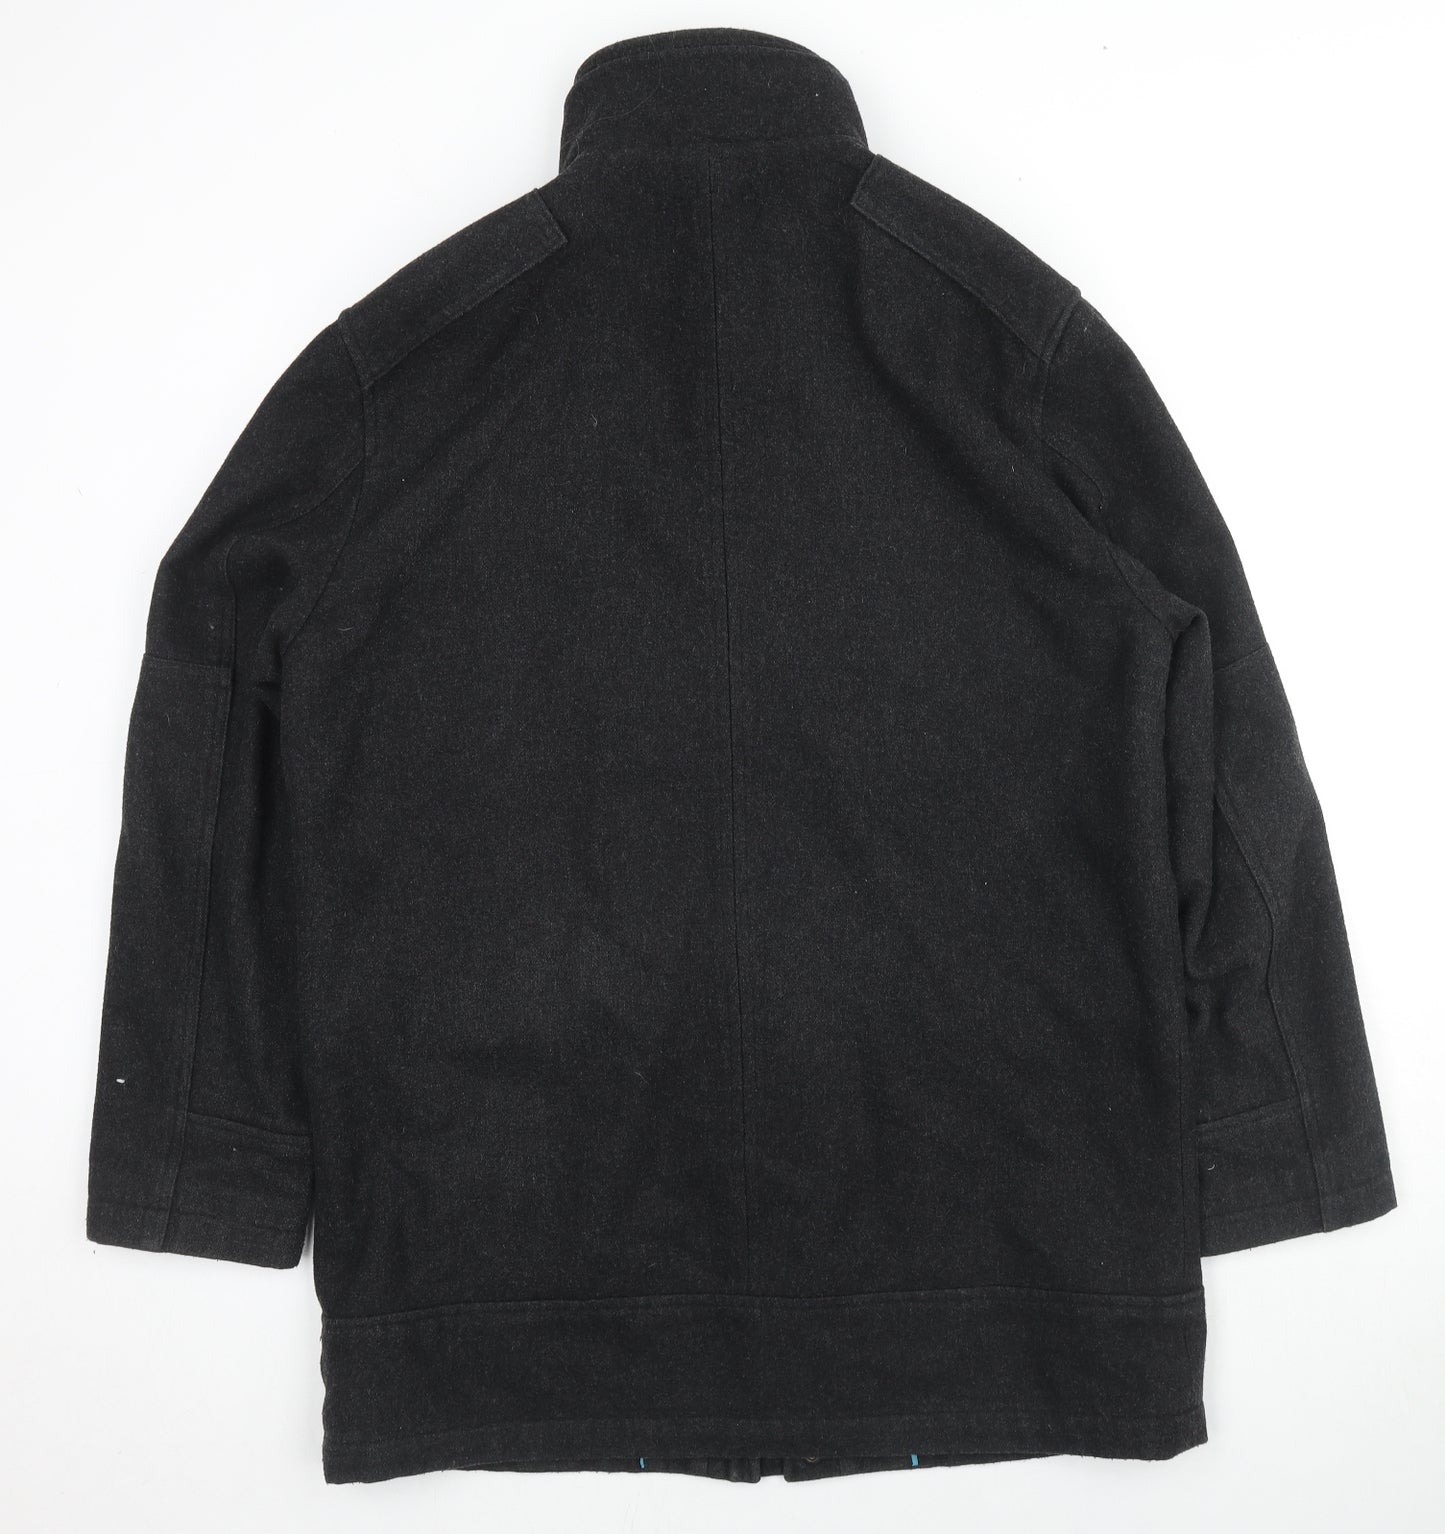 NEXT Mens Black Pea Coat Coat Size L Zip